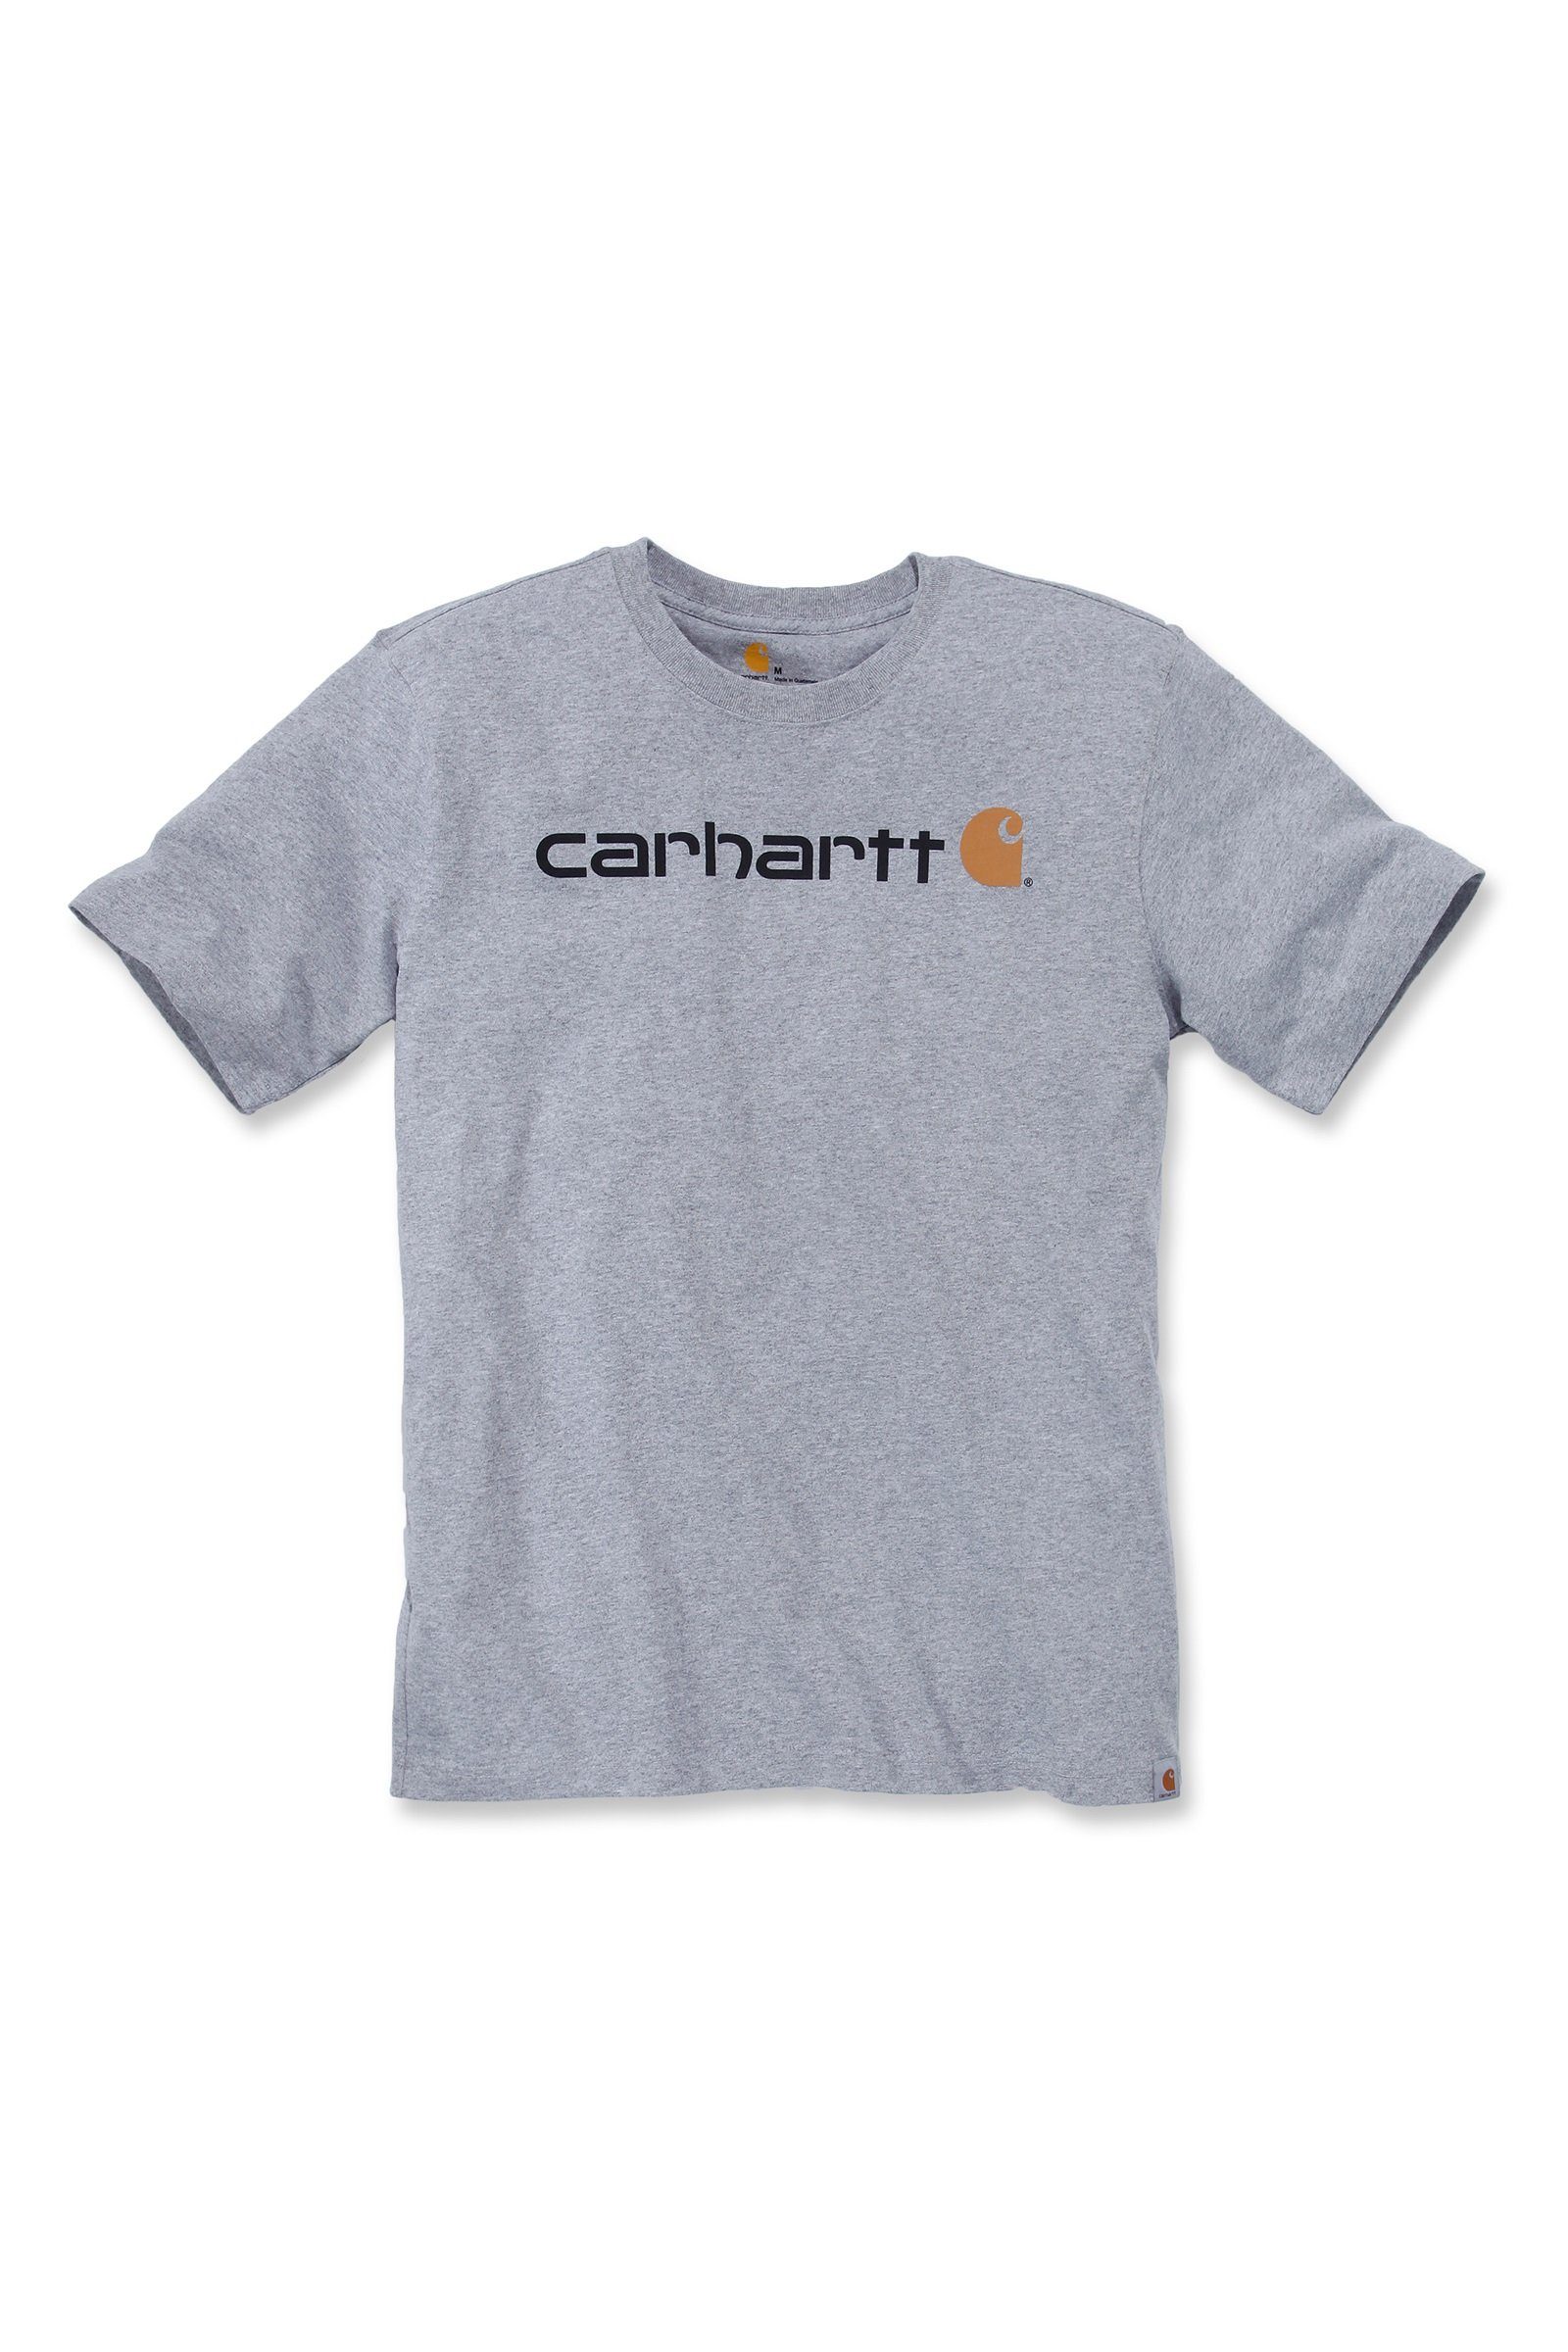 Fit Graphic heather Carhartt Logo grey Heavyweight Carhartt T-Shirt Adult T-Shirt Relaxed Short-Sleeve Herren